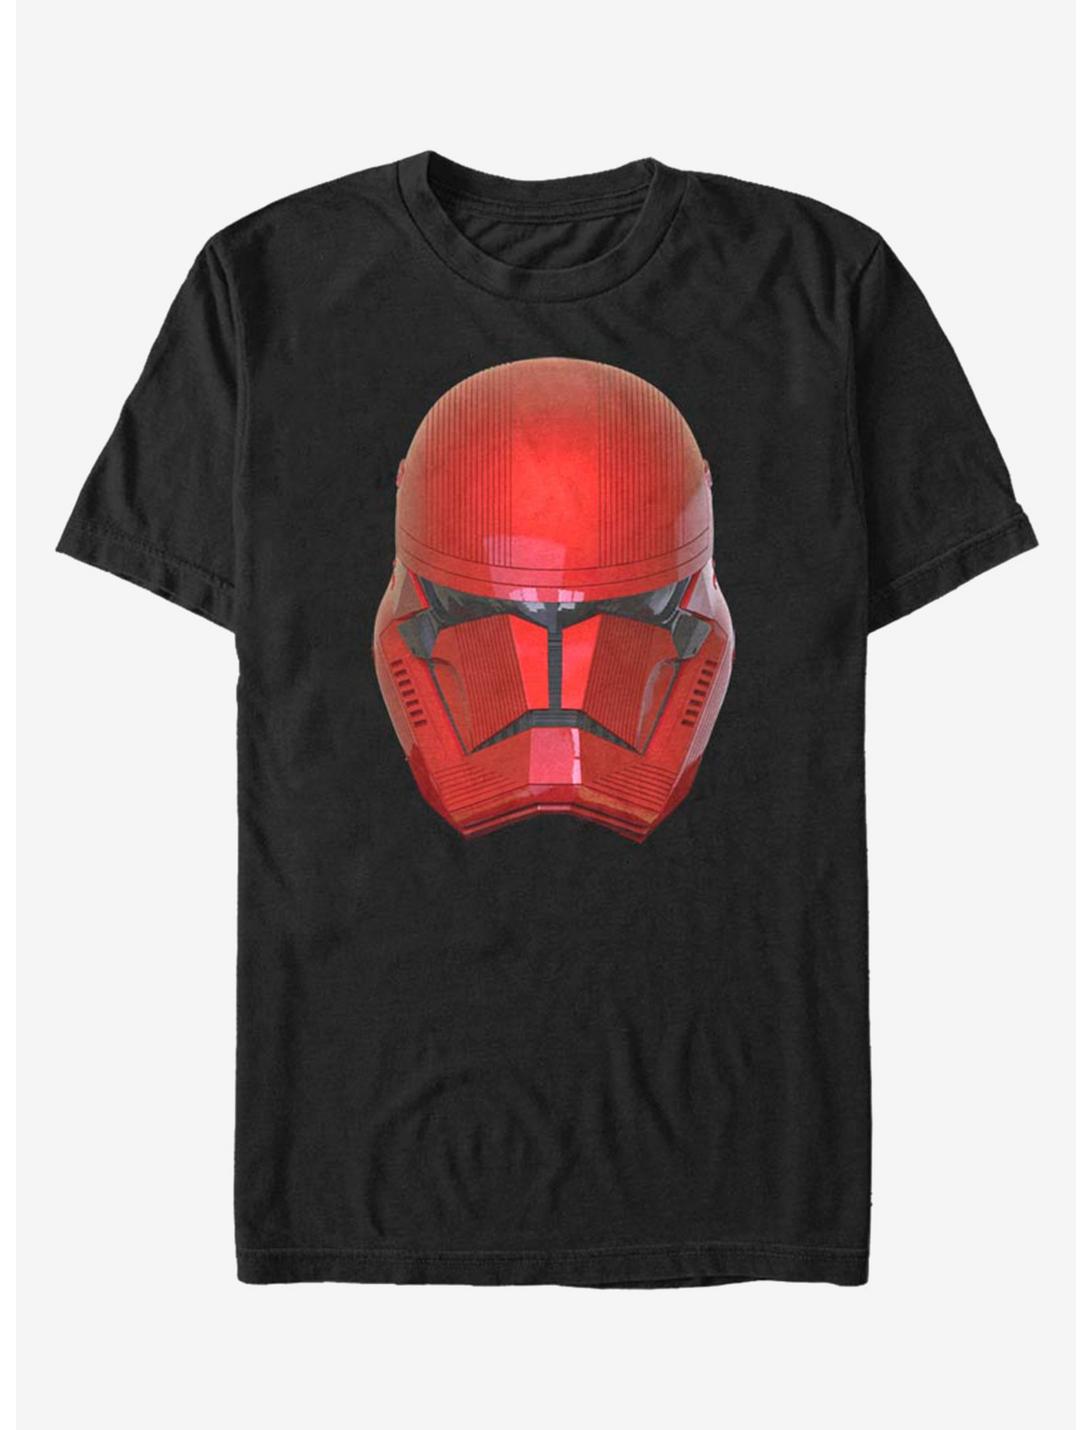 Star Wars Episode IX The Rise Of Skywalker Red Helm T-Shirt, BLACK, hi-res